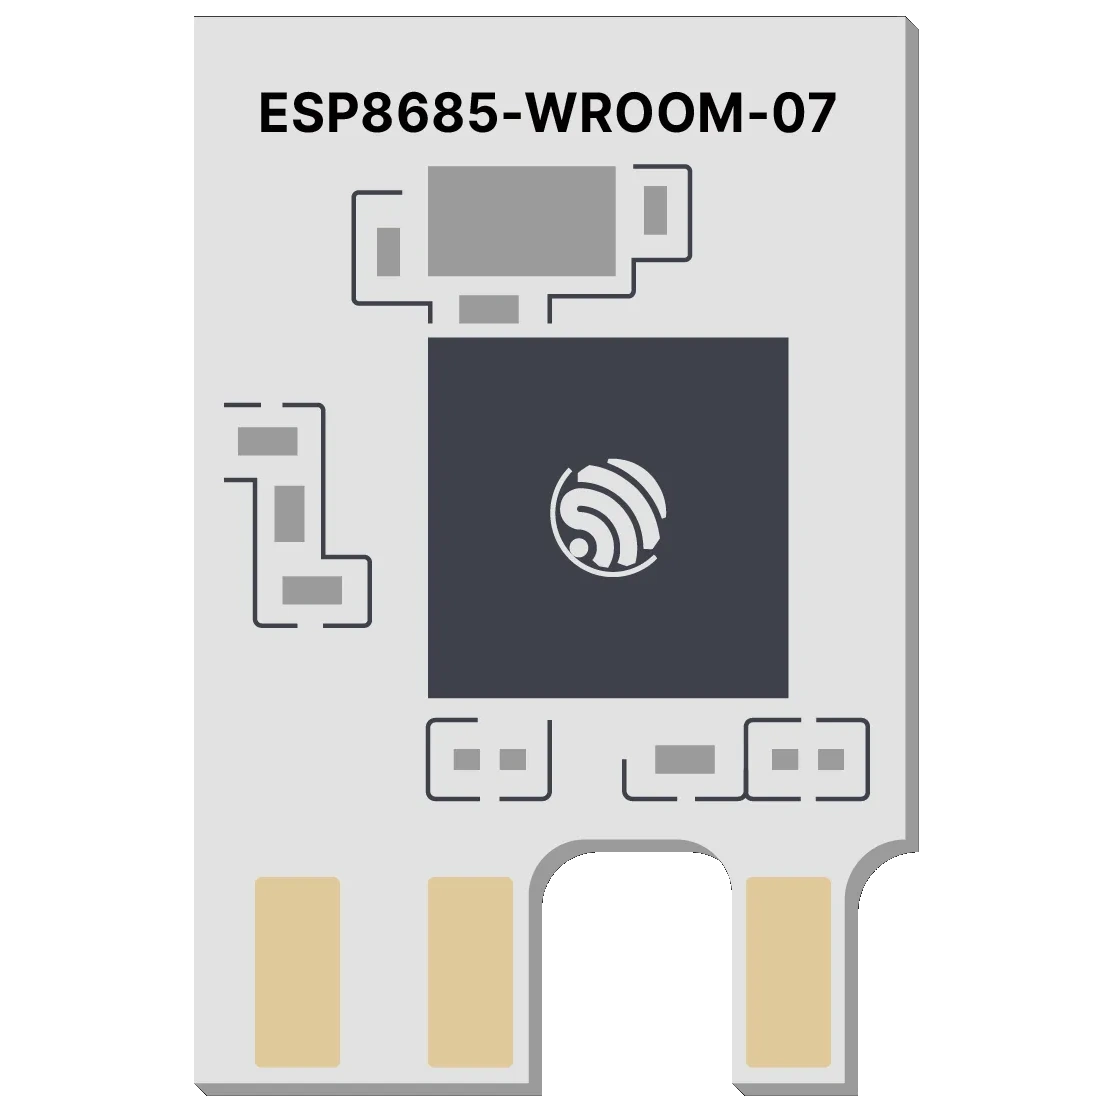 ESP8685-WROOM-07 ESP23-C3 CBLC5 Replacement